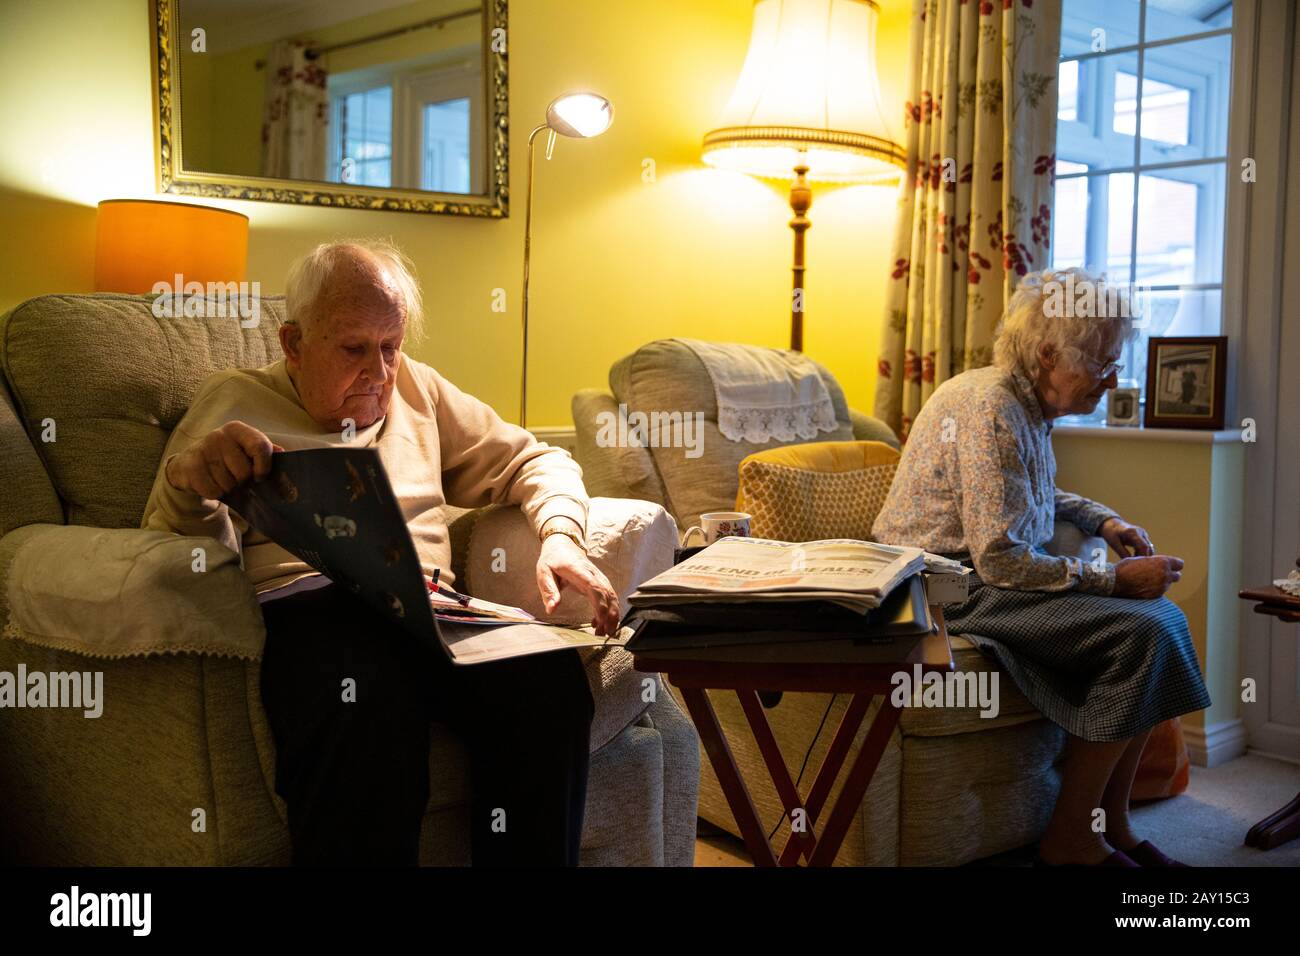 Verheiratete Rentner im Alter, die beide in ihren 80er Jahren zusammen in ihrem Zwielicht leben, England, Großbritannien Stockfoto